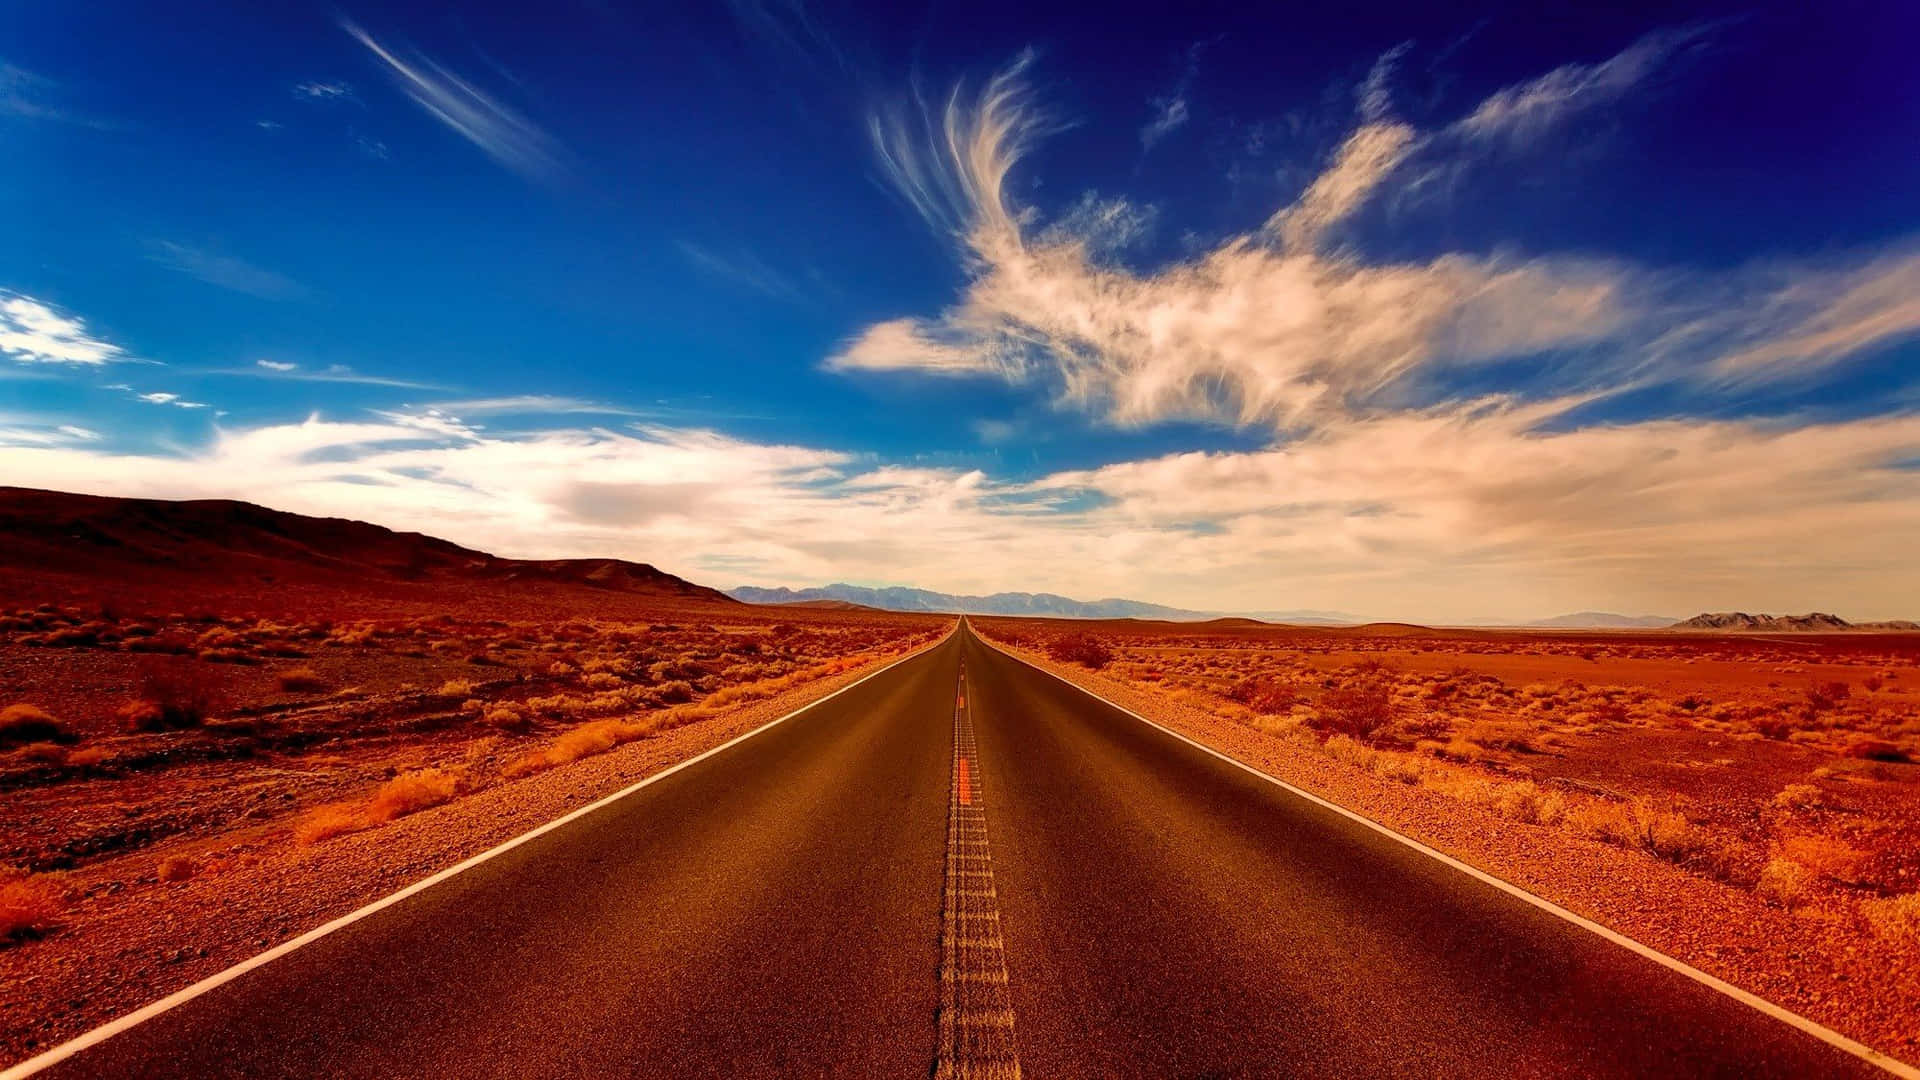 Desert Road Background And Horizon